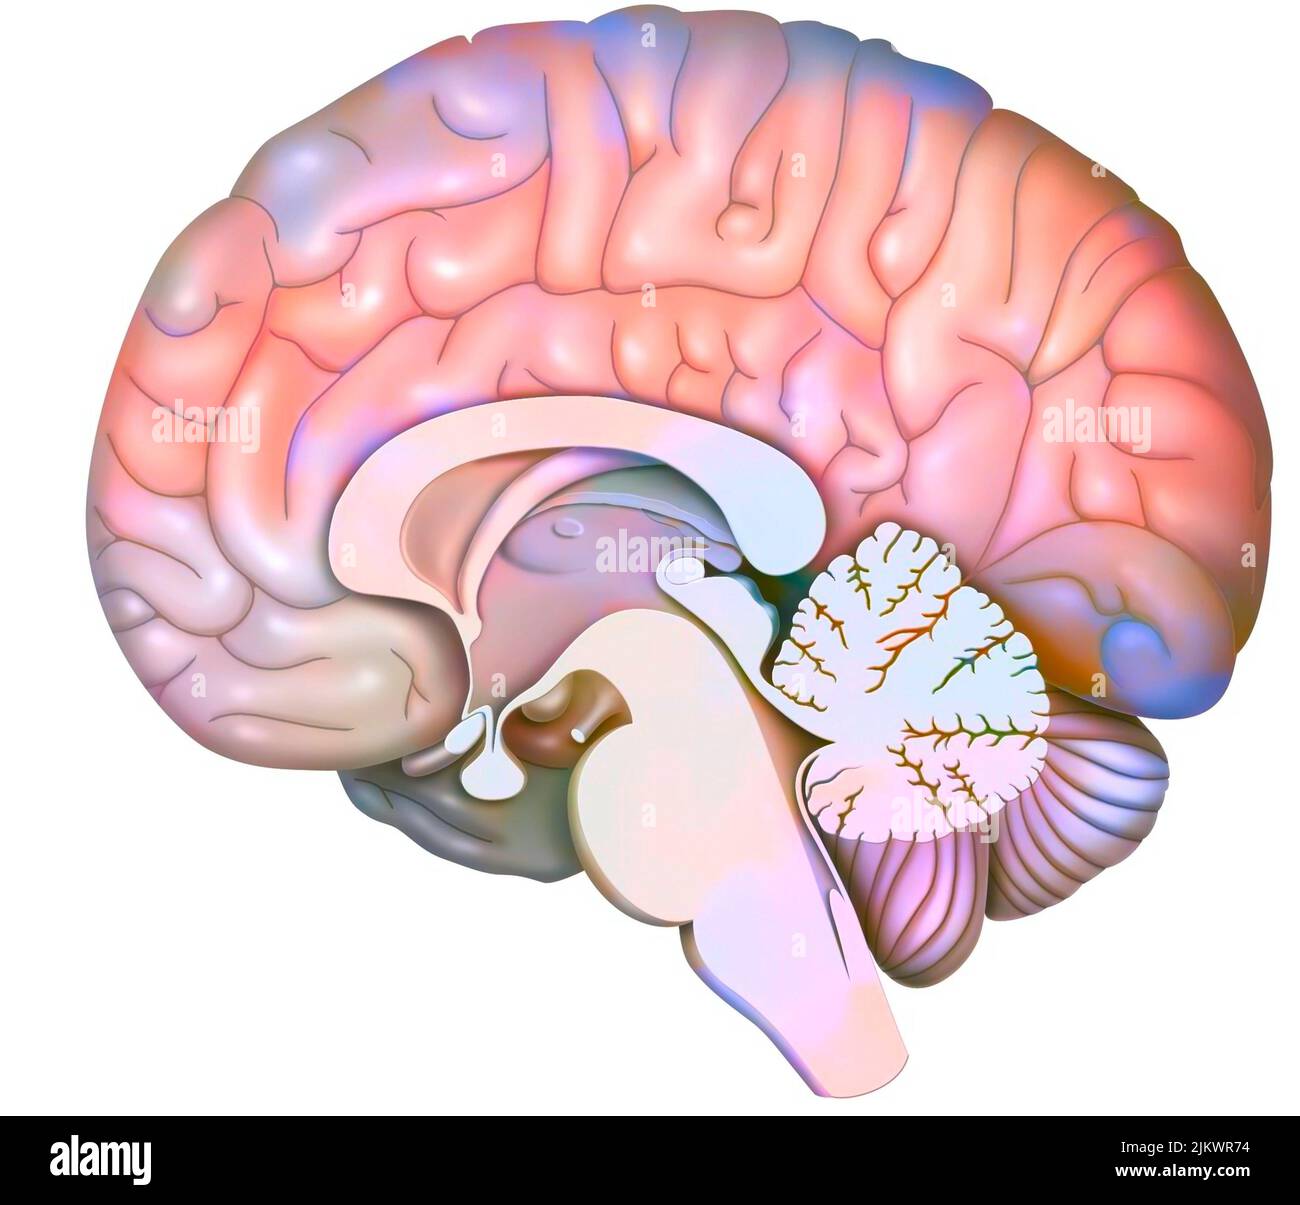 Sezione sagittale mediana del cervello con cervelletto e inizio del tronco cerebrale. Foto Stock